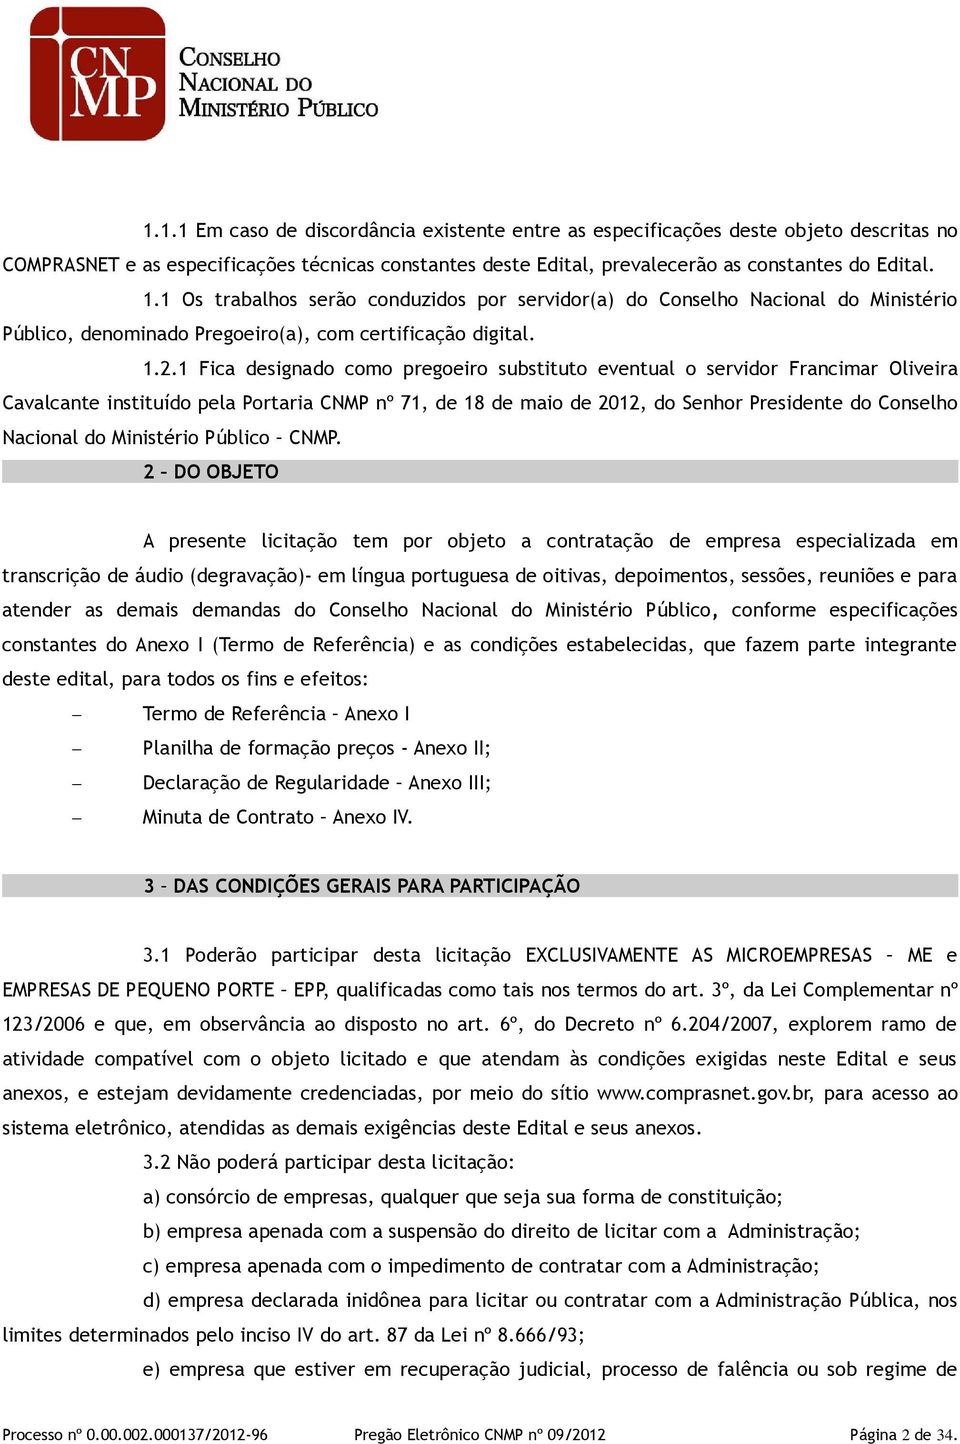 1 Fica designado como pregoeiro substituto eventual o servidor Francimar Oliveira Cavalcante instituído pela Portaria CNMP nº 71, de 18 de maio de 2012, do Senhor Presidente do Conselho Nacional do